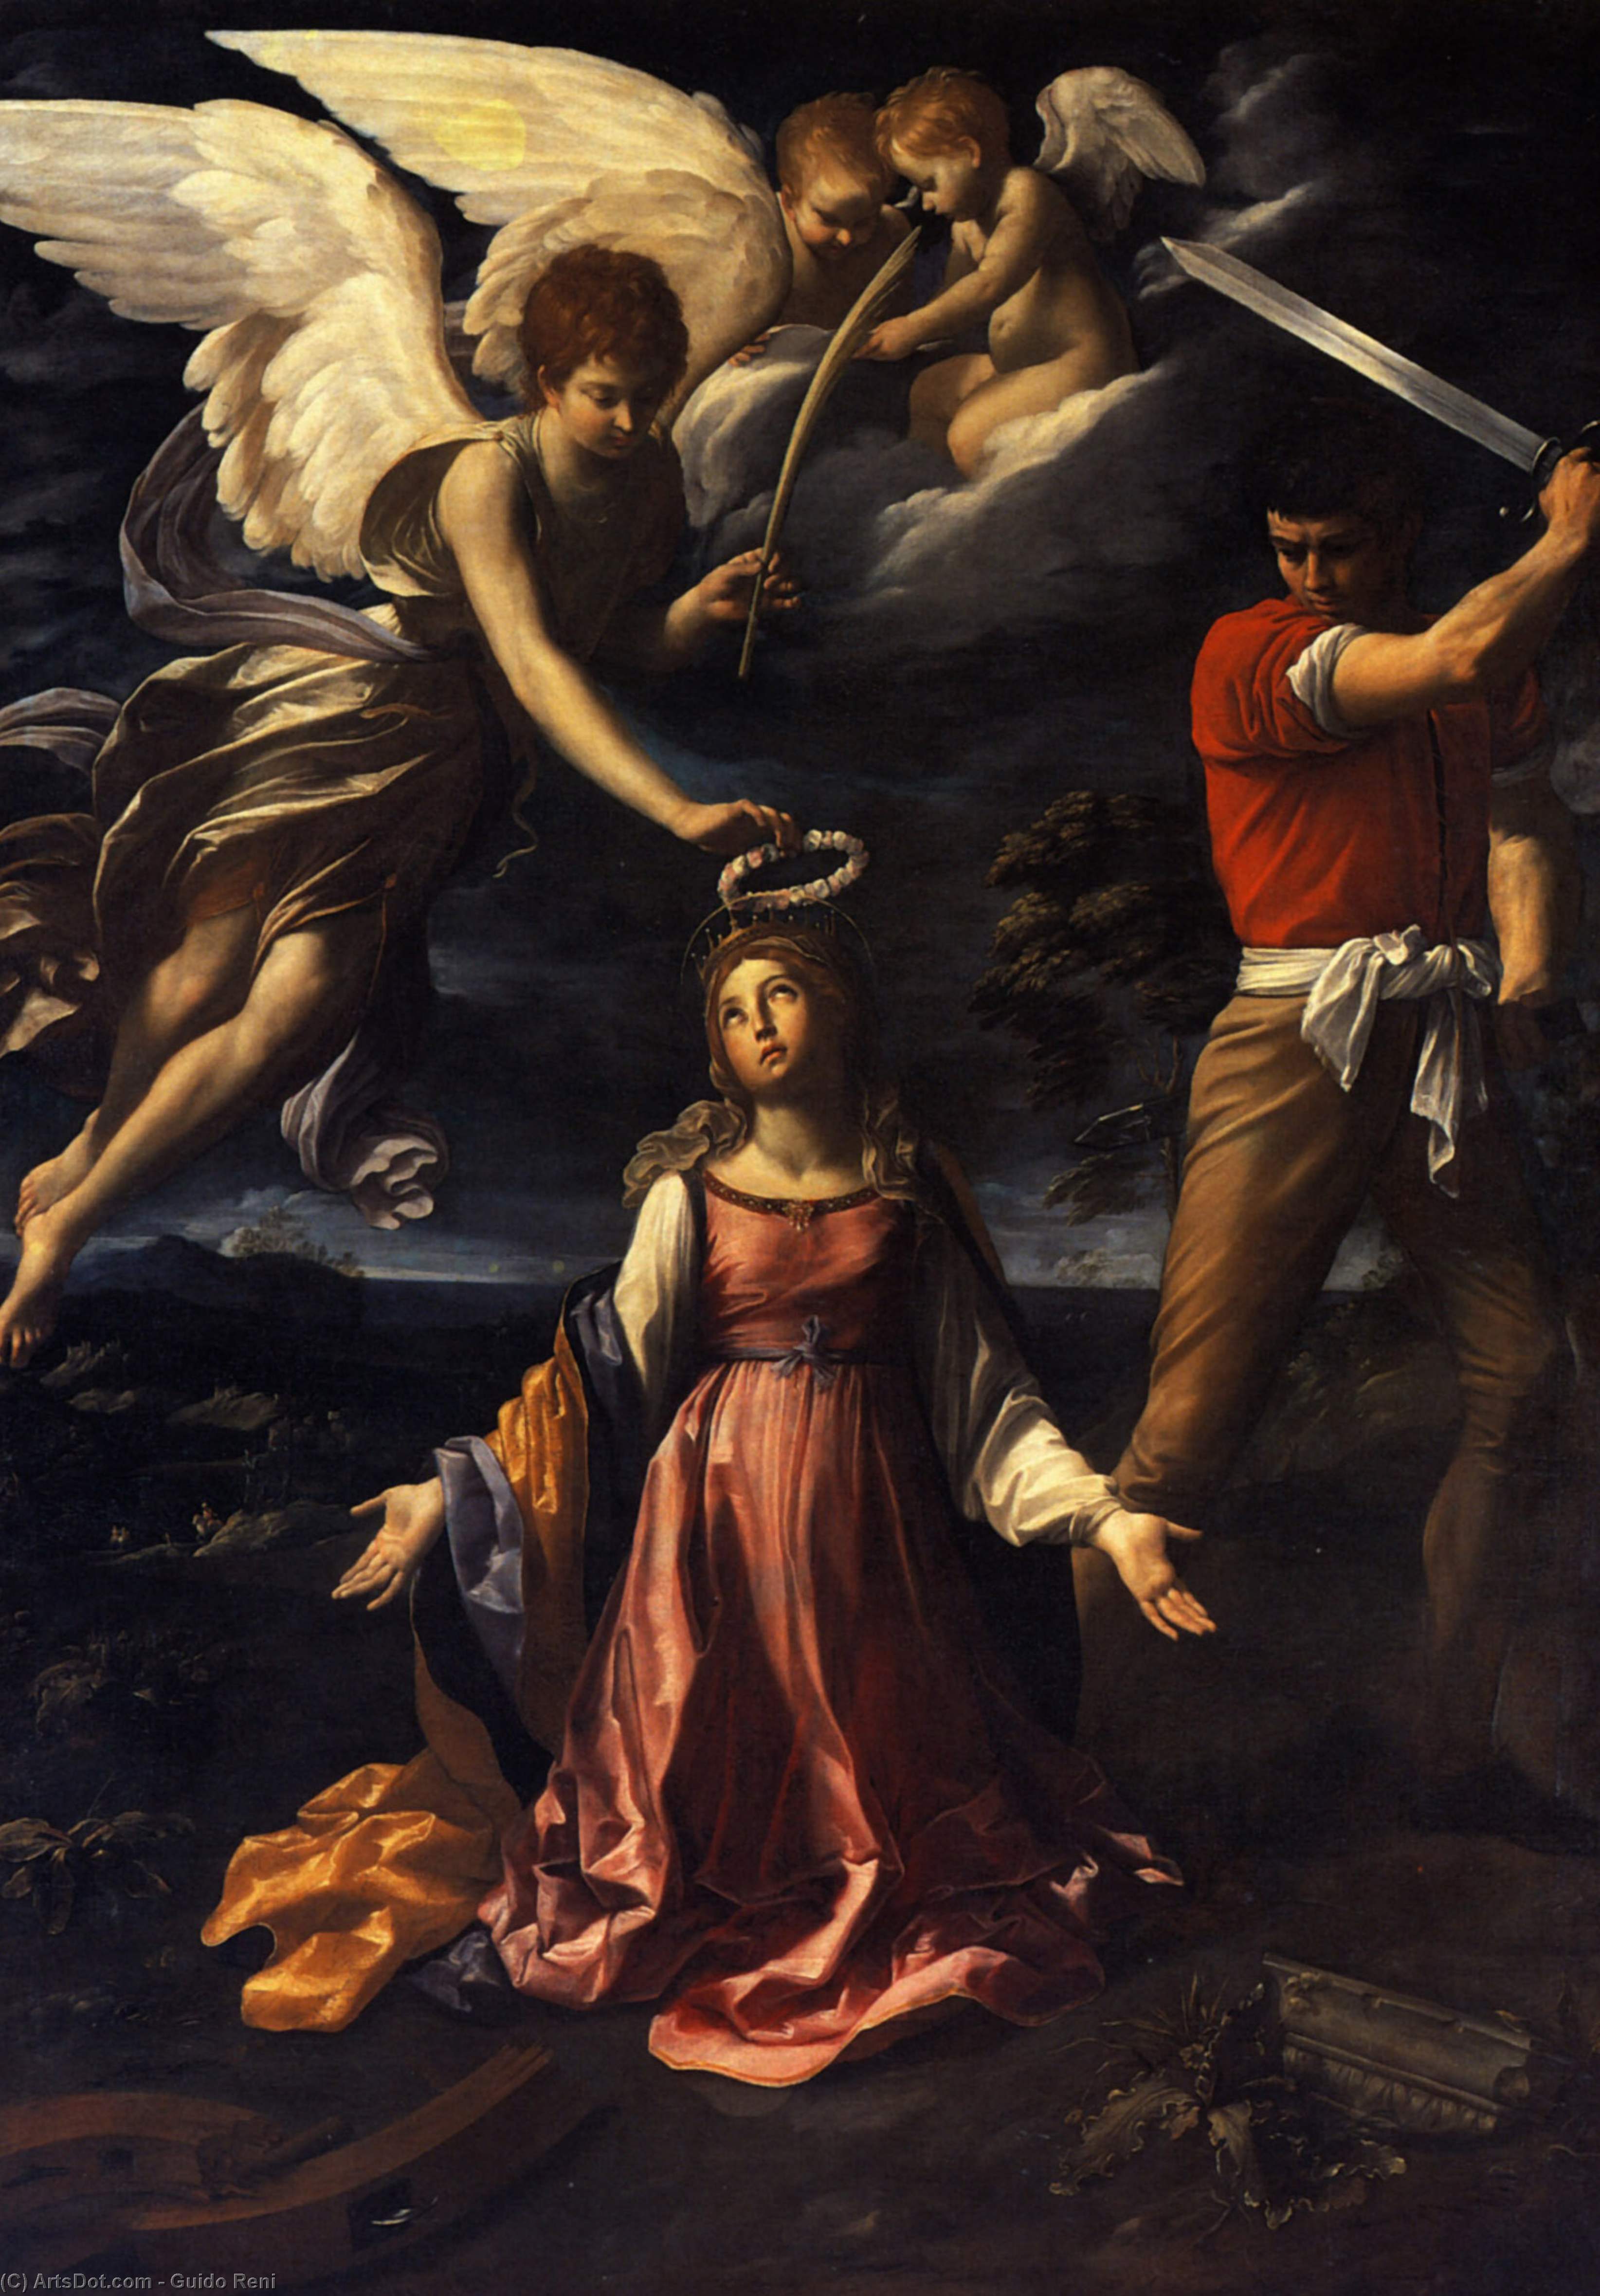 Wikioo.org - Bách khoa toàn thư về mỹ thuật - Vẽ tranh, Tác phẩm nghệ thuật Reni Guido (Le Guide) - Martyrdom of Saint Catherine of Alexandria